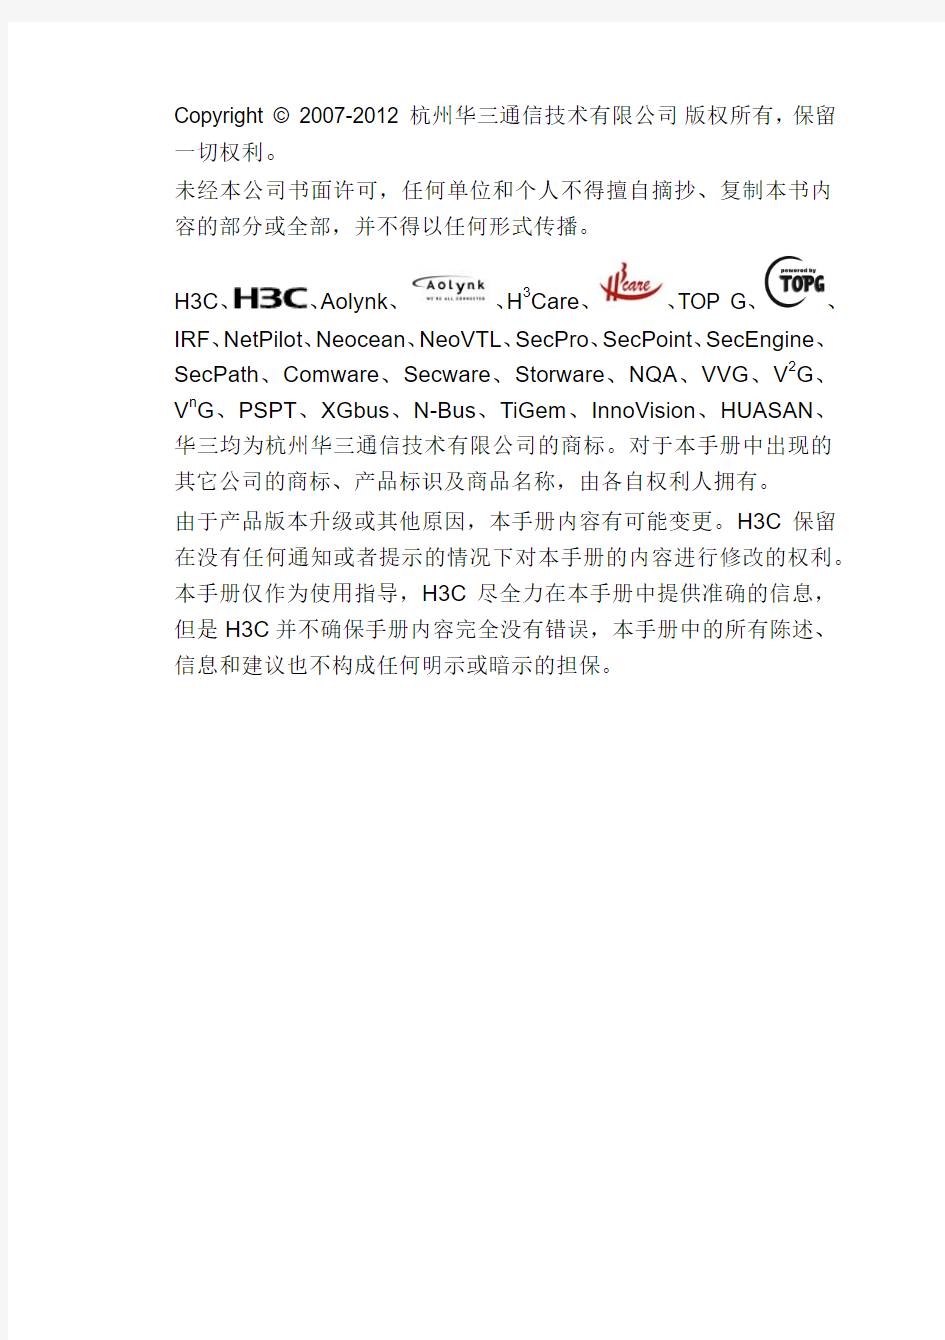 H3C iMC 用户手册